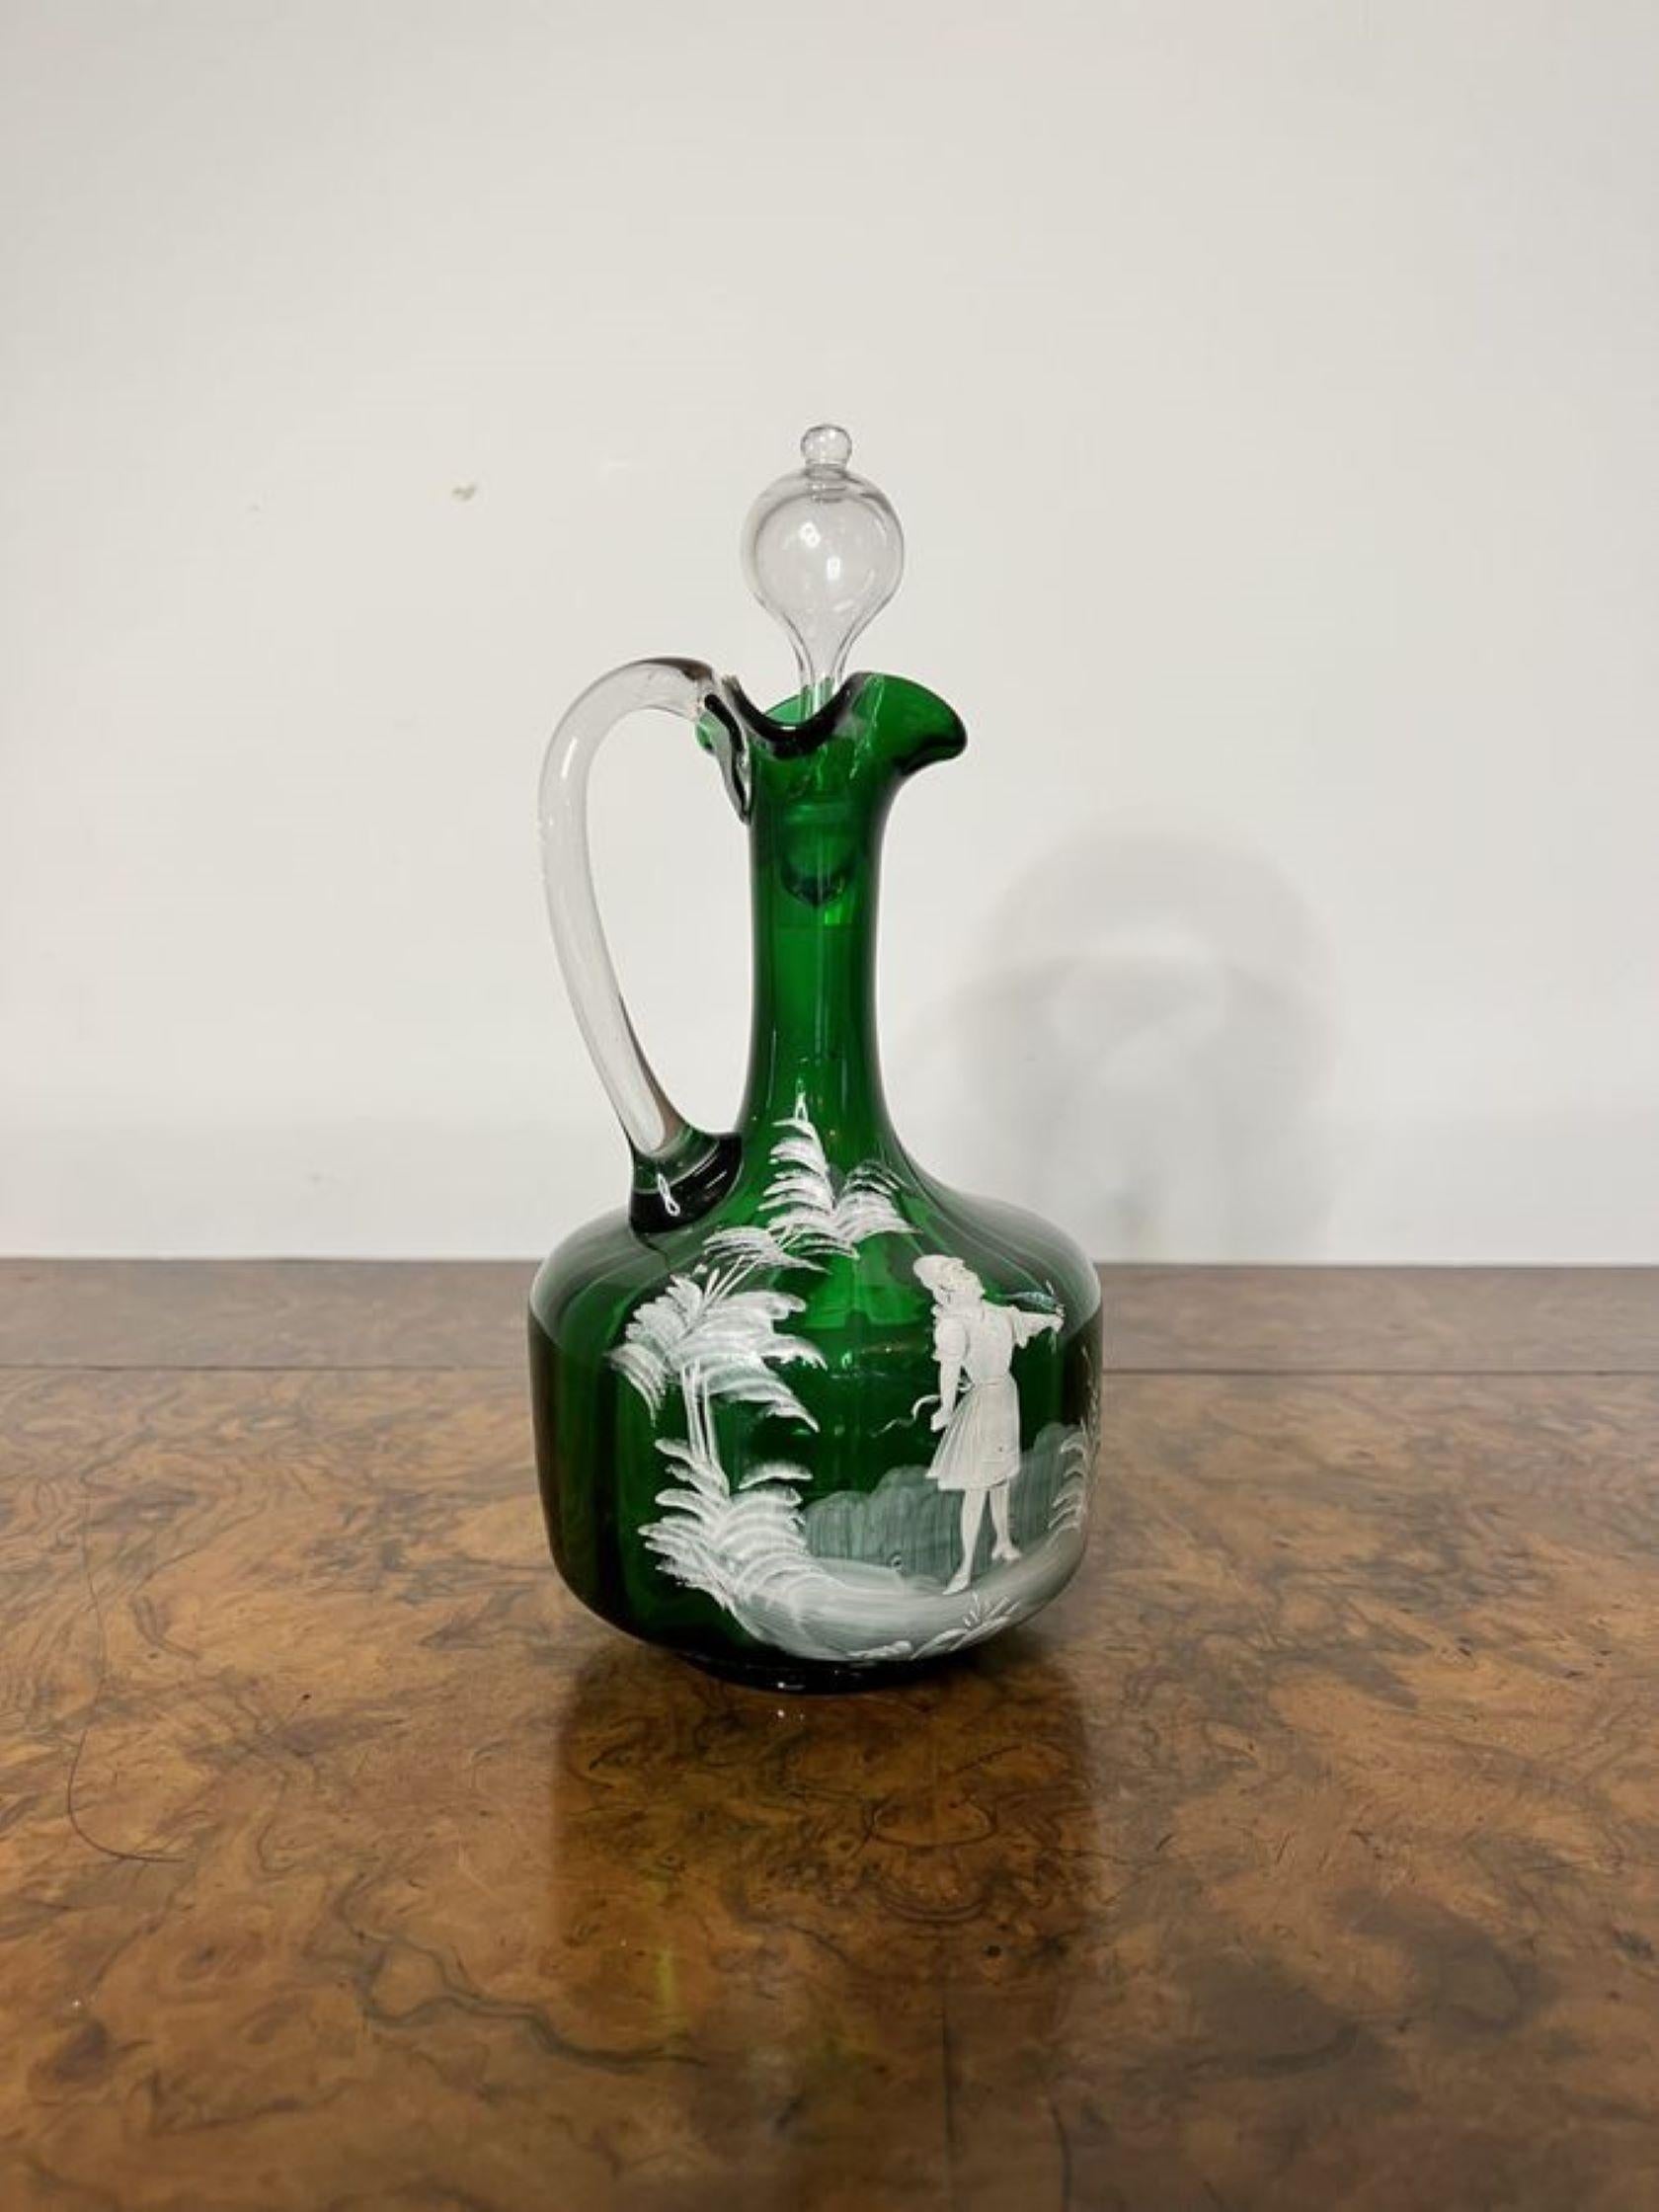 Atemberaubende Qualität antiken viktorianischen Mary Gregory grünes Glas Ewer mit einer atemberaubenden Qualität Mary Gregory grünes Glas Ewer mit weißer Emaille Dekoration eines Mädchens von Bäumen umgeben mit einem geformten Griff auf der